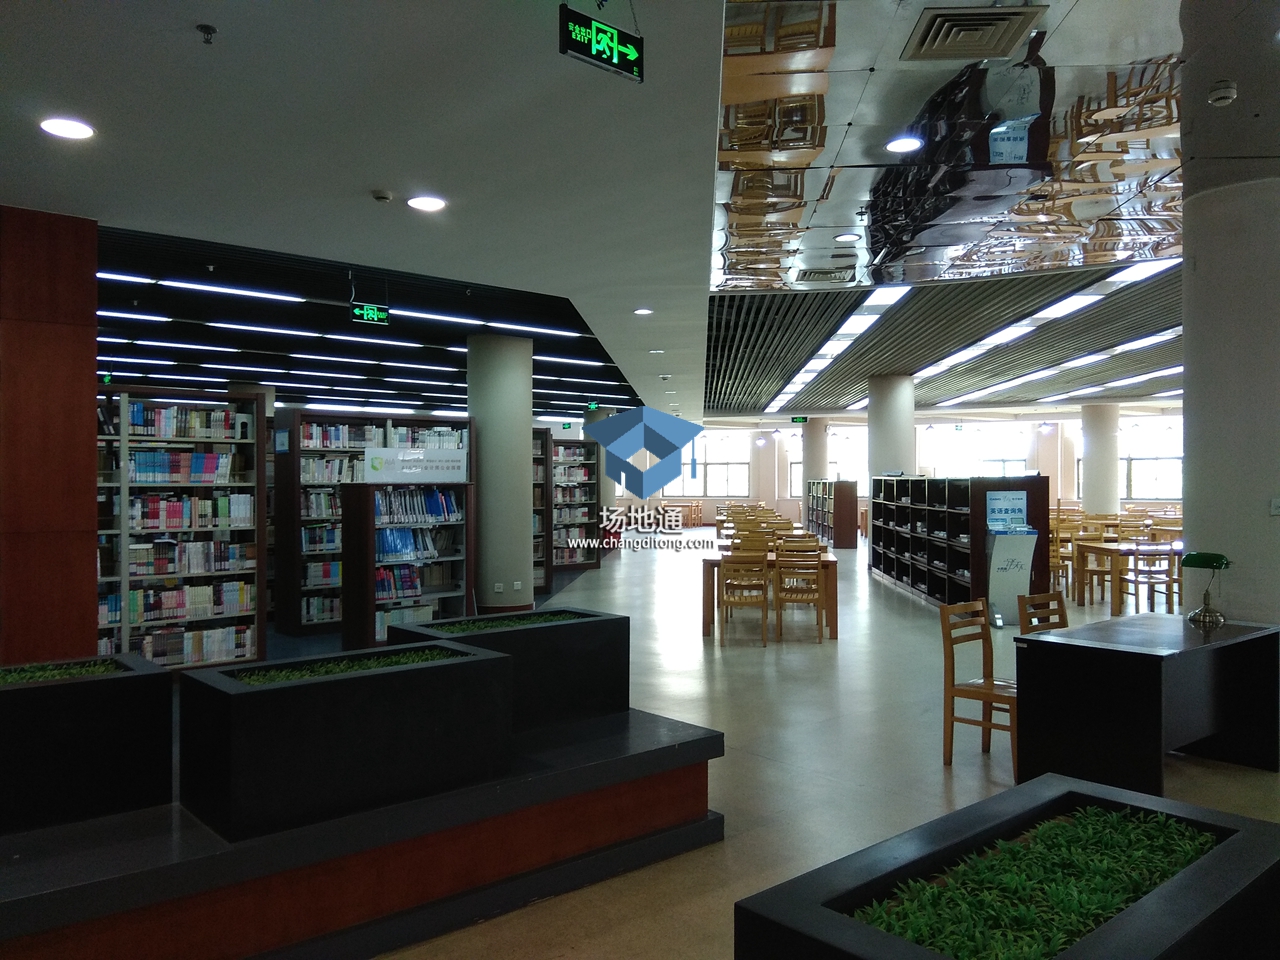 上海立信会计学院松江校区图书馆